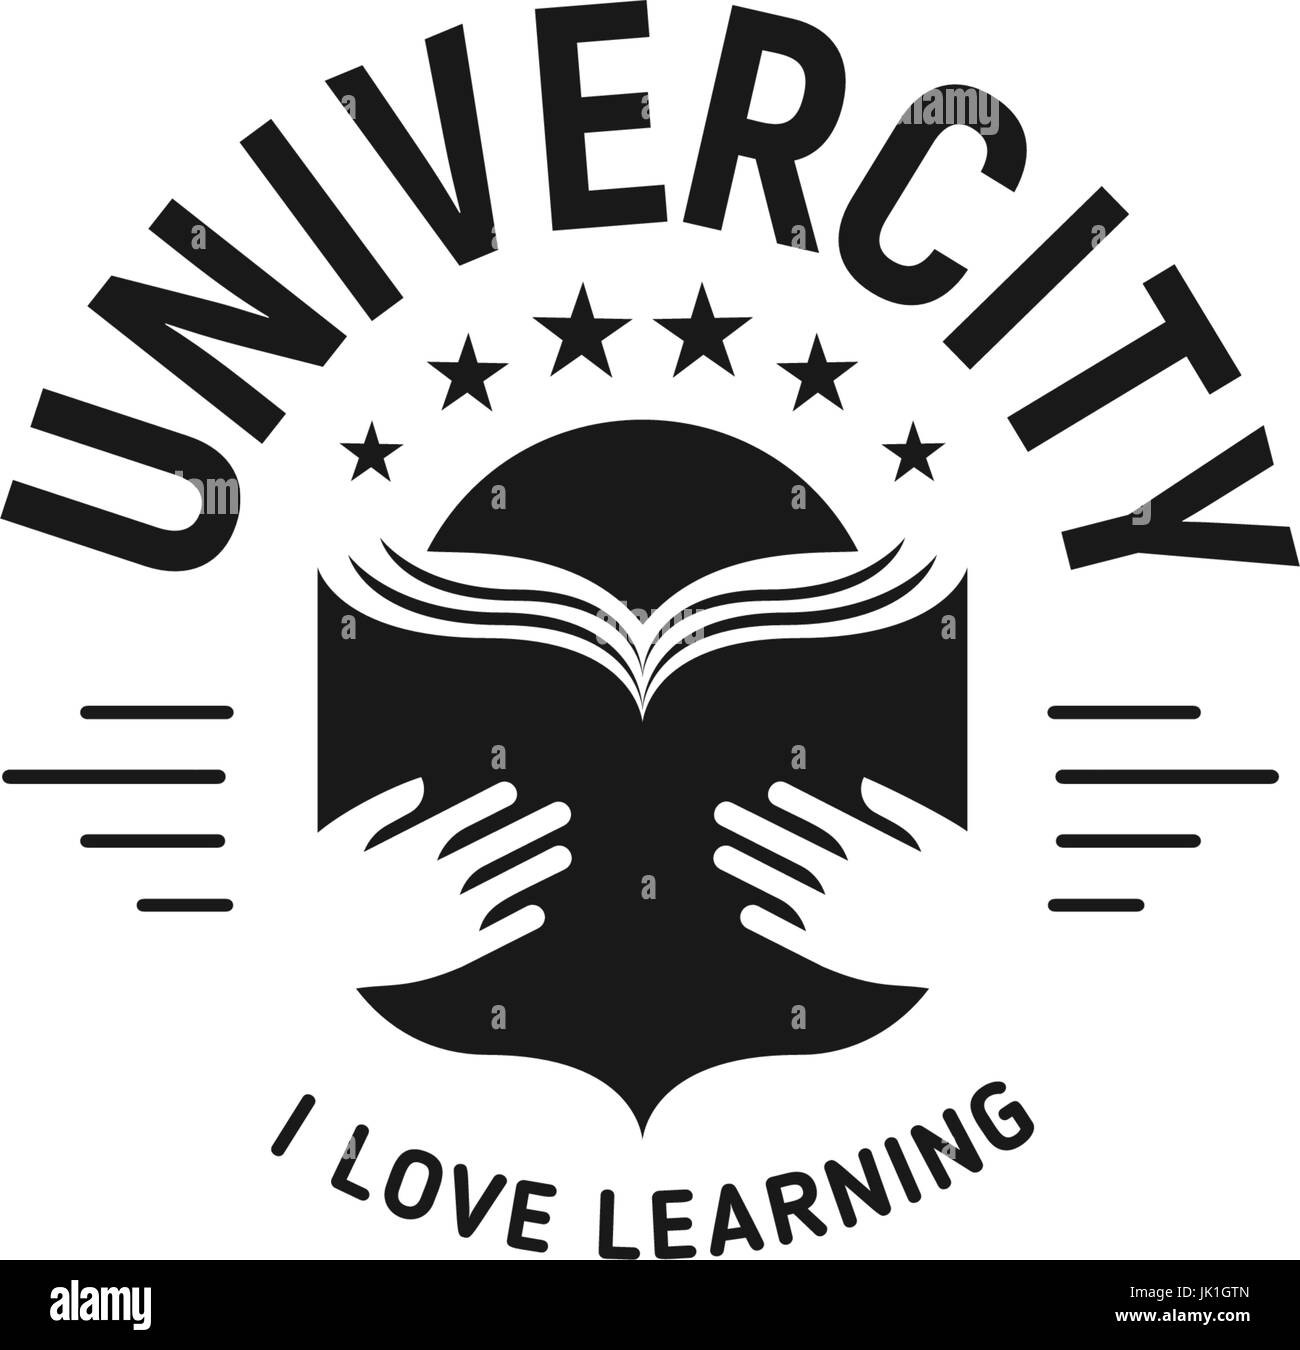 Schwarz / weiß Bildung Emblem auf weißem Hintergrund, Vektor Schullogo, Monochrom Vintage Zeichen. Universität, College-Retro-Design-Stempel. Stock Vektor